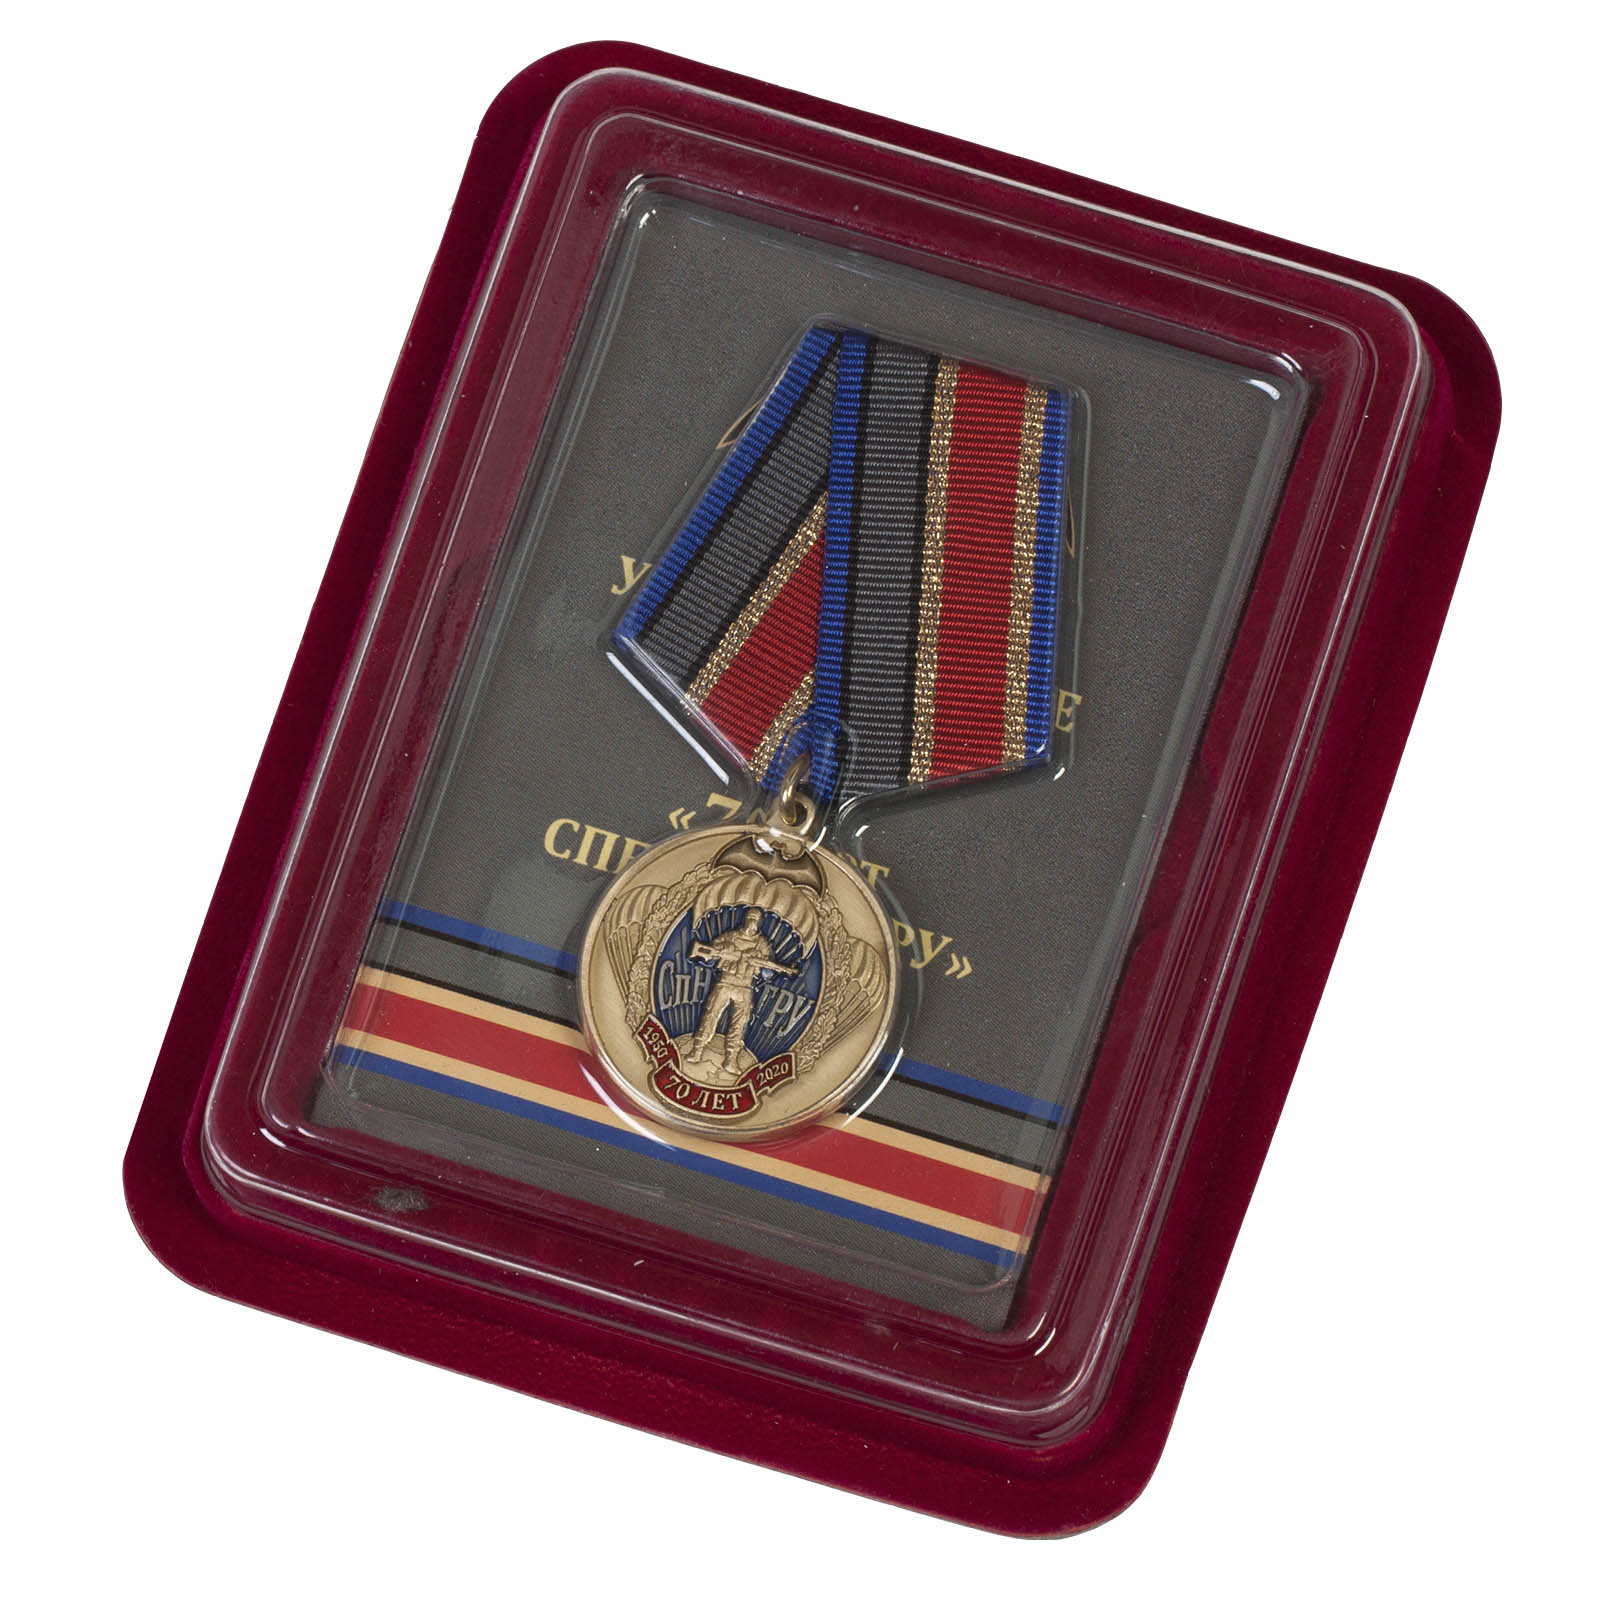 Купить медаль 70 лет СпН ГРУ в наградном футляре